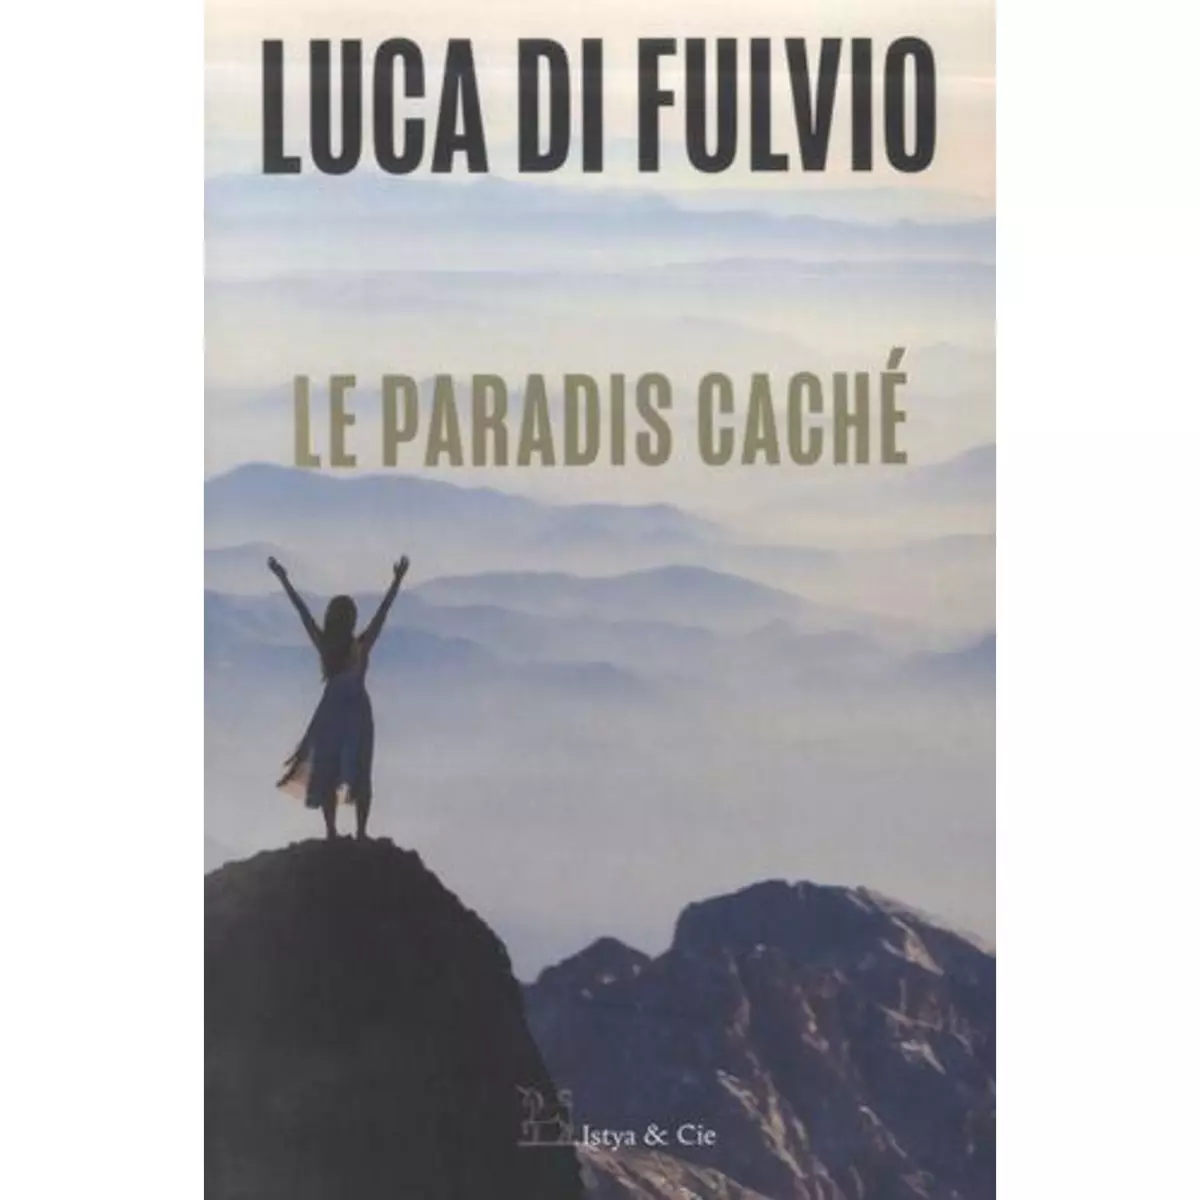  LE PARADIS CACHE, Di Fulvio Luca